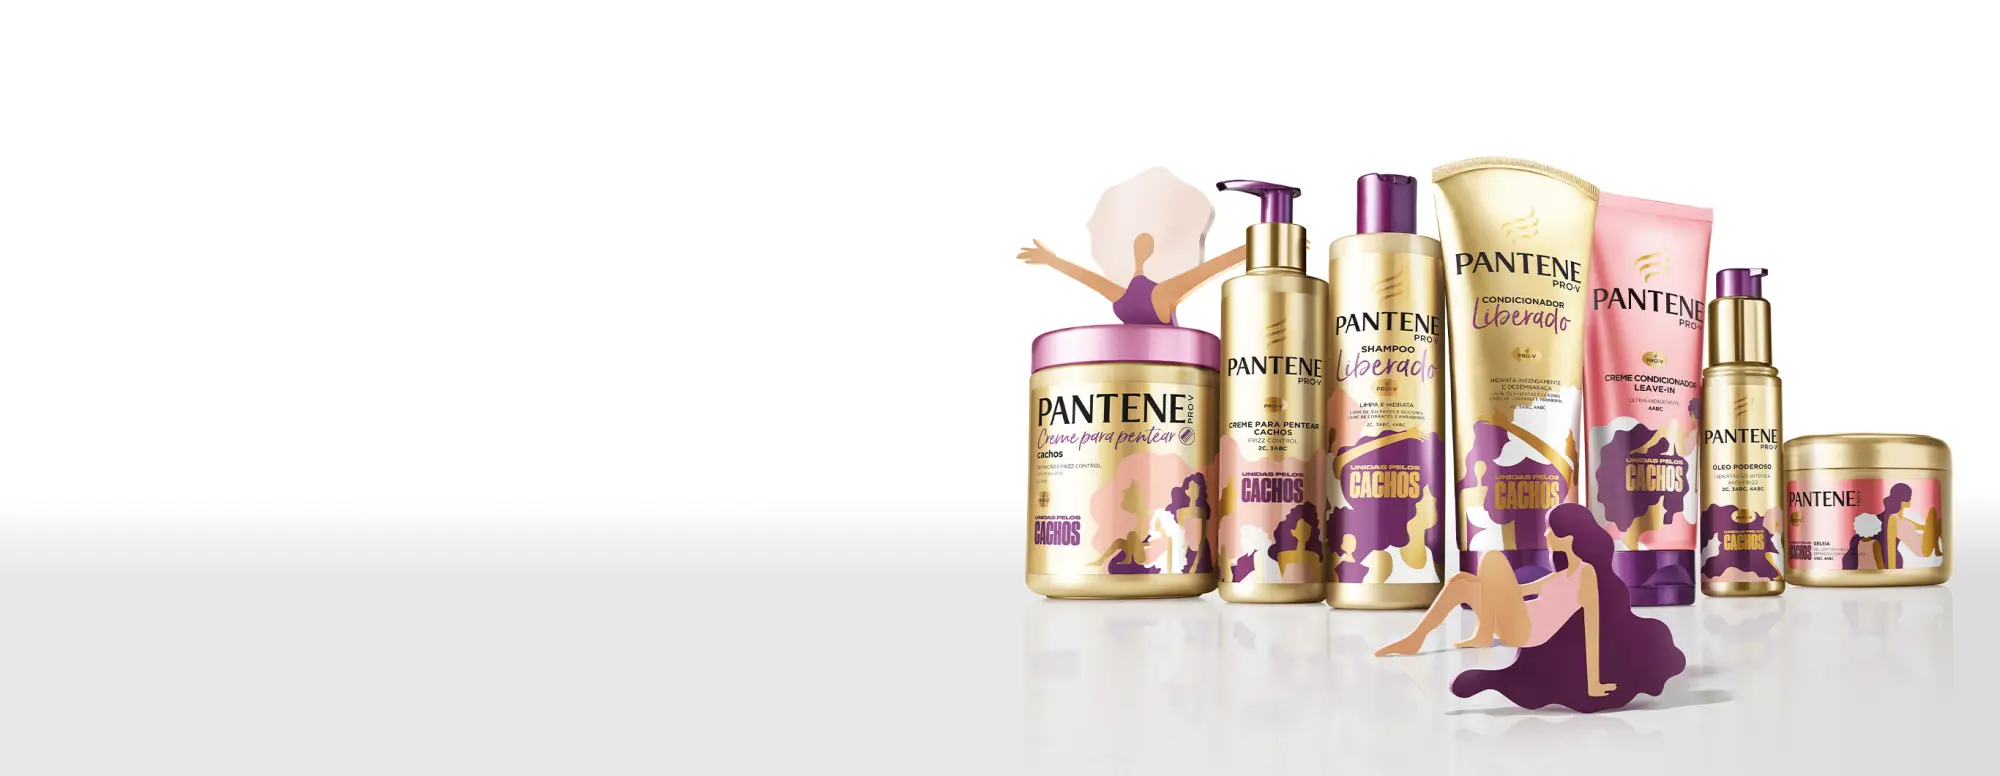 Coleção unidas pelos cachos da Pantene com produtos liberados para cabelos cacheados